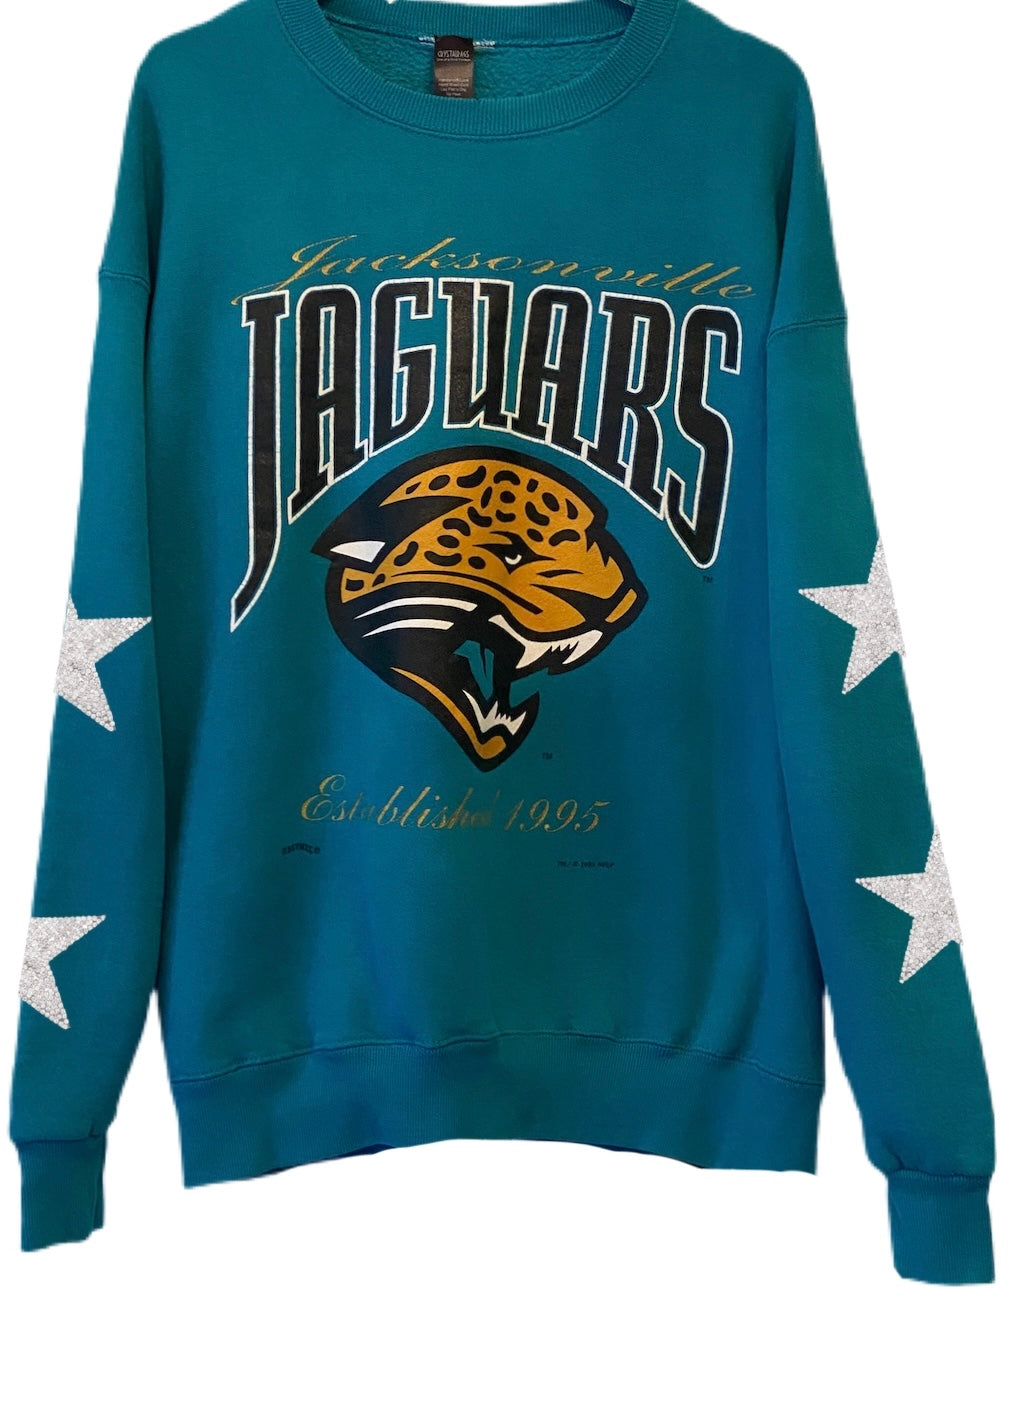 Jacksonville Jaguars, NFL One of a KIND Vintage Sweatshirt with Crystal Star Design